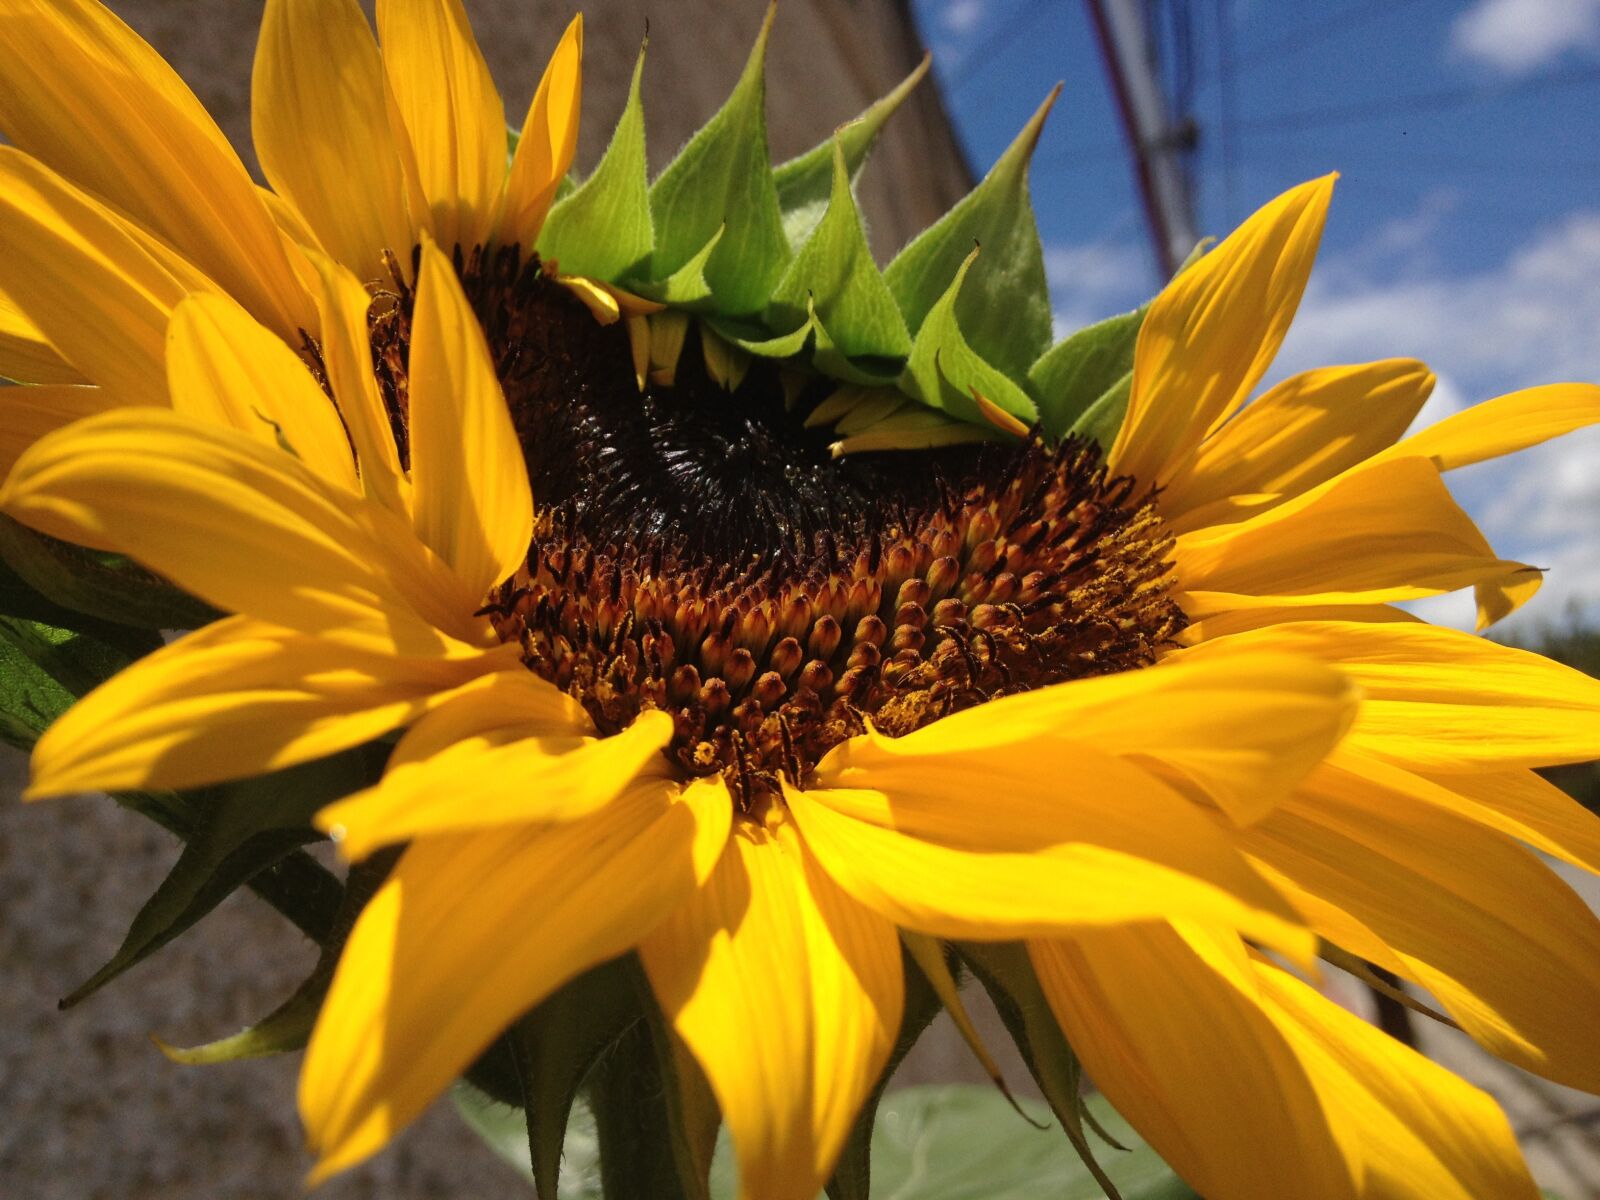 Apple iPhone 4S sample photo. Jardín, sunflower, garden photography